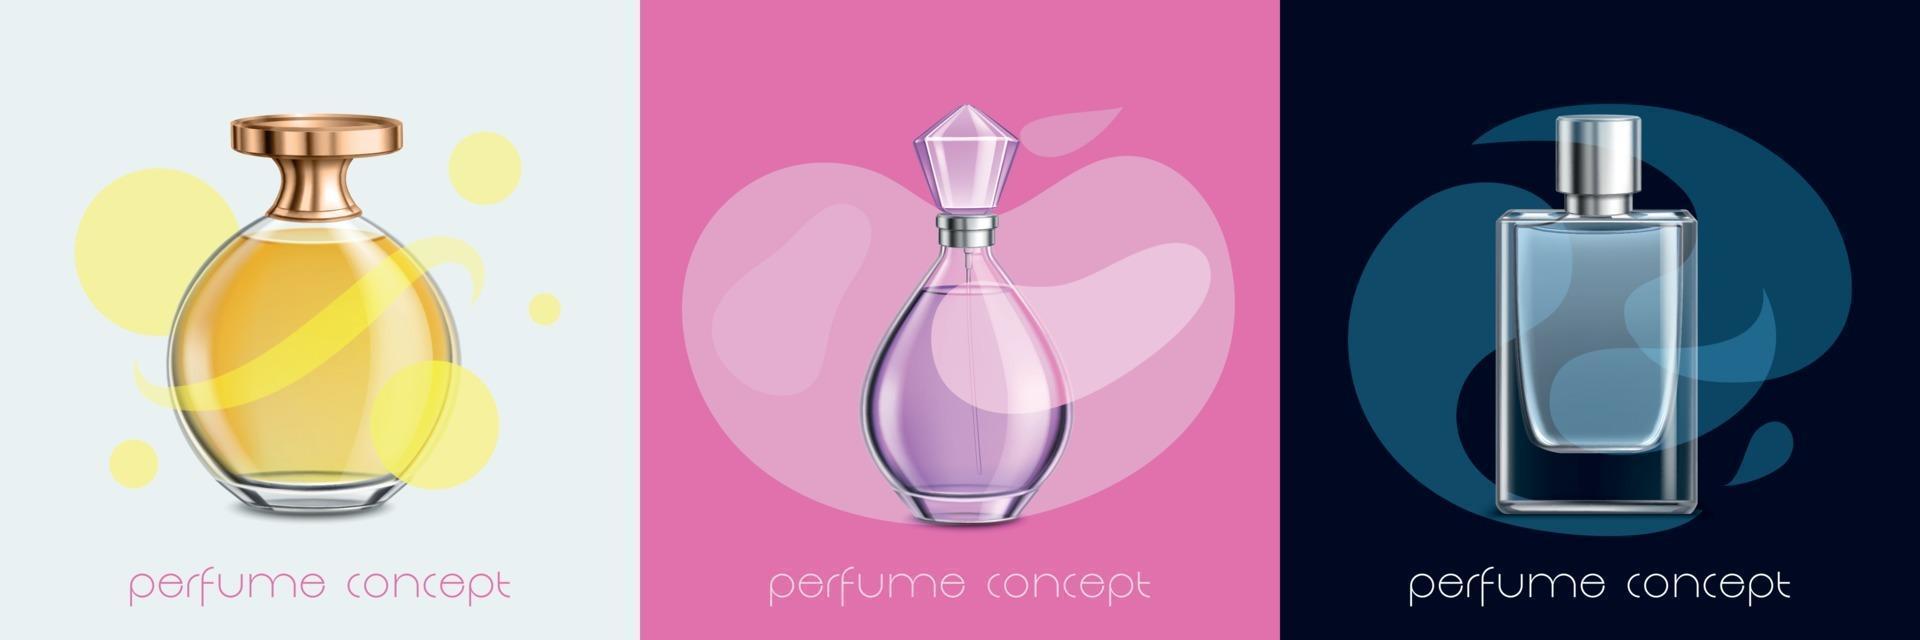 Perfume Design Concept vector